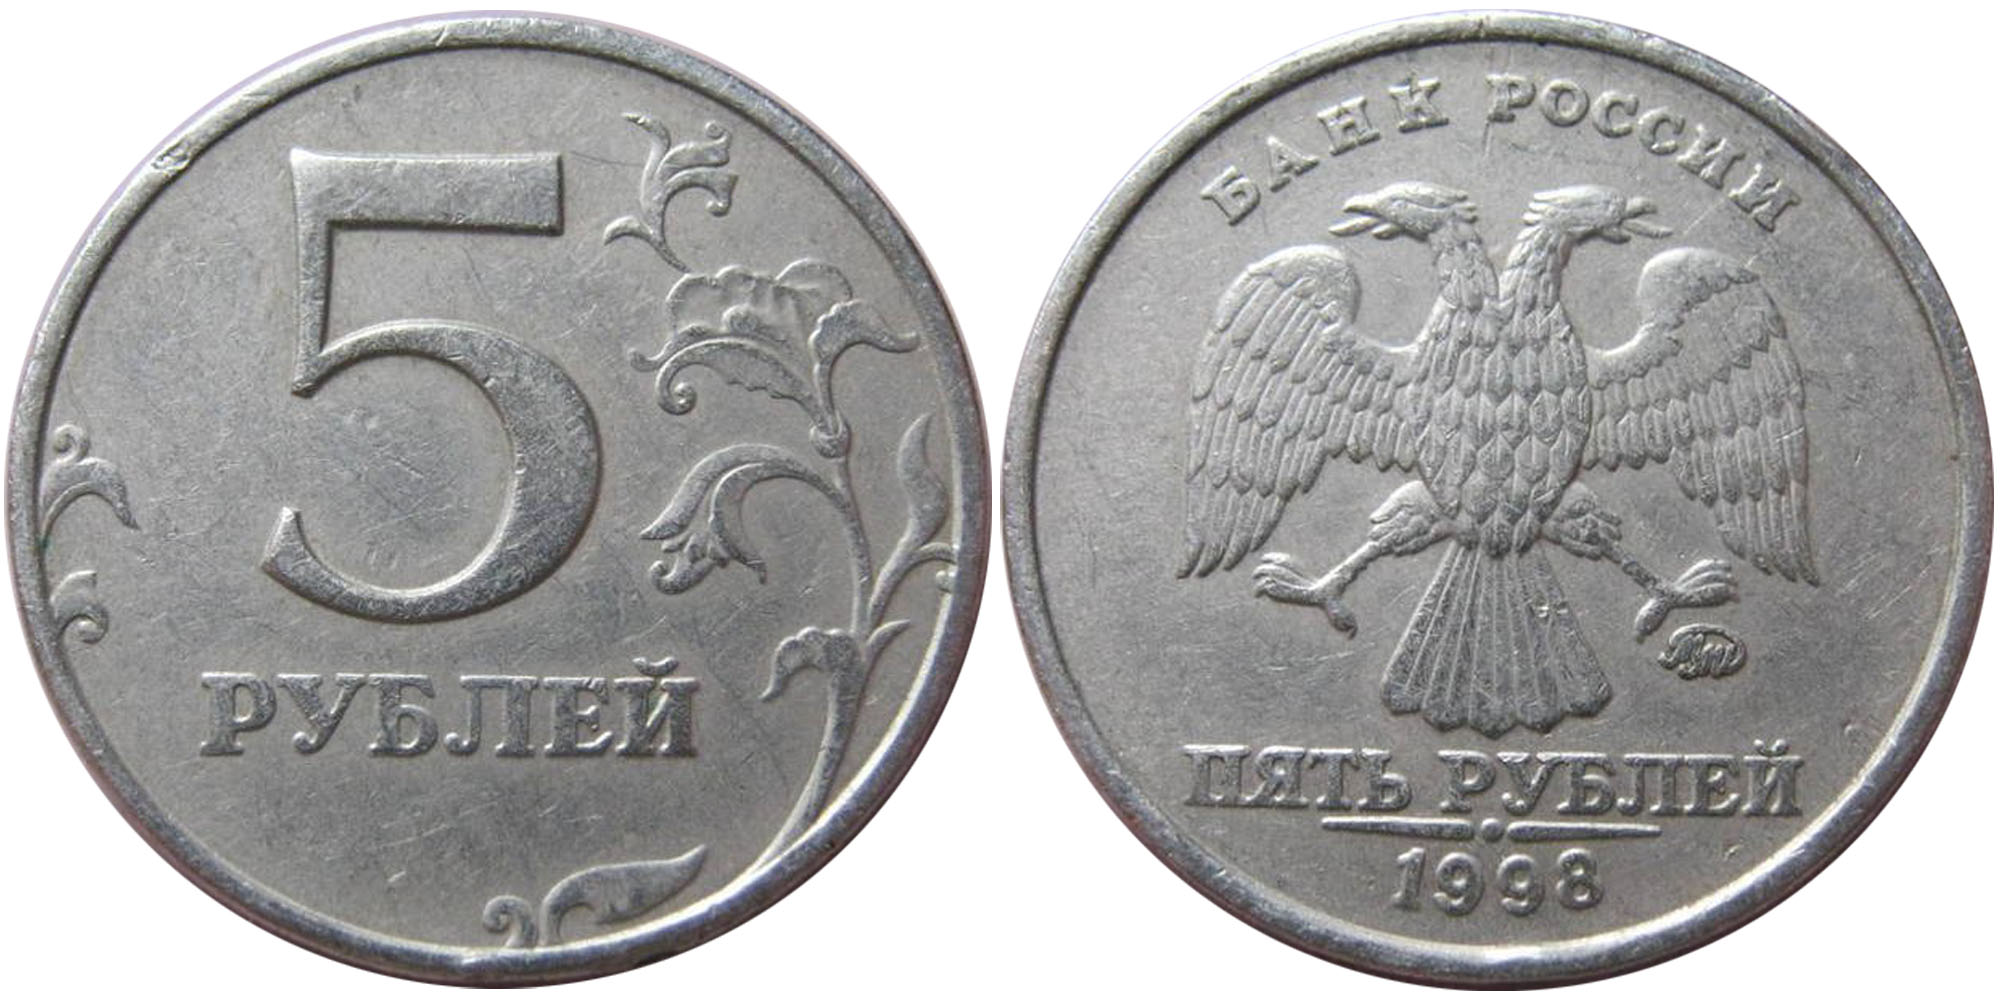 R 5 в рублях. 5 Рублей 1998 ММД. Монета 5 рублей Аверс. Монета 5 рублей Аверс и реверс. 5 Рублей 98 ММД.